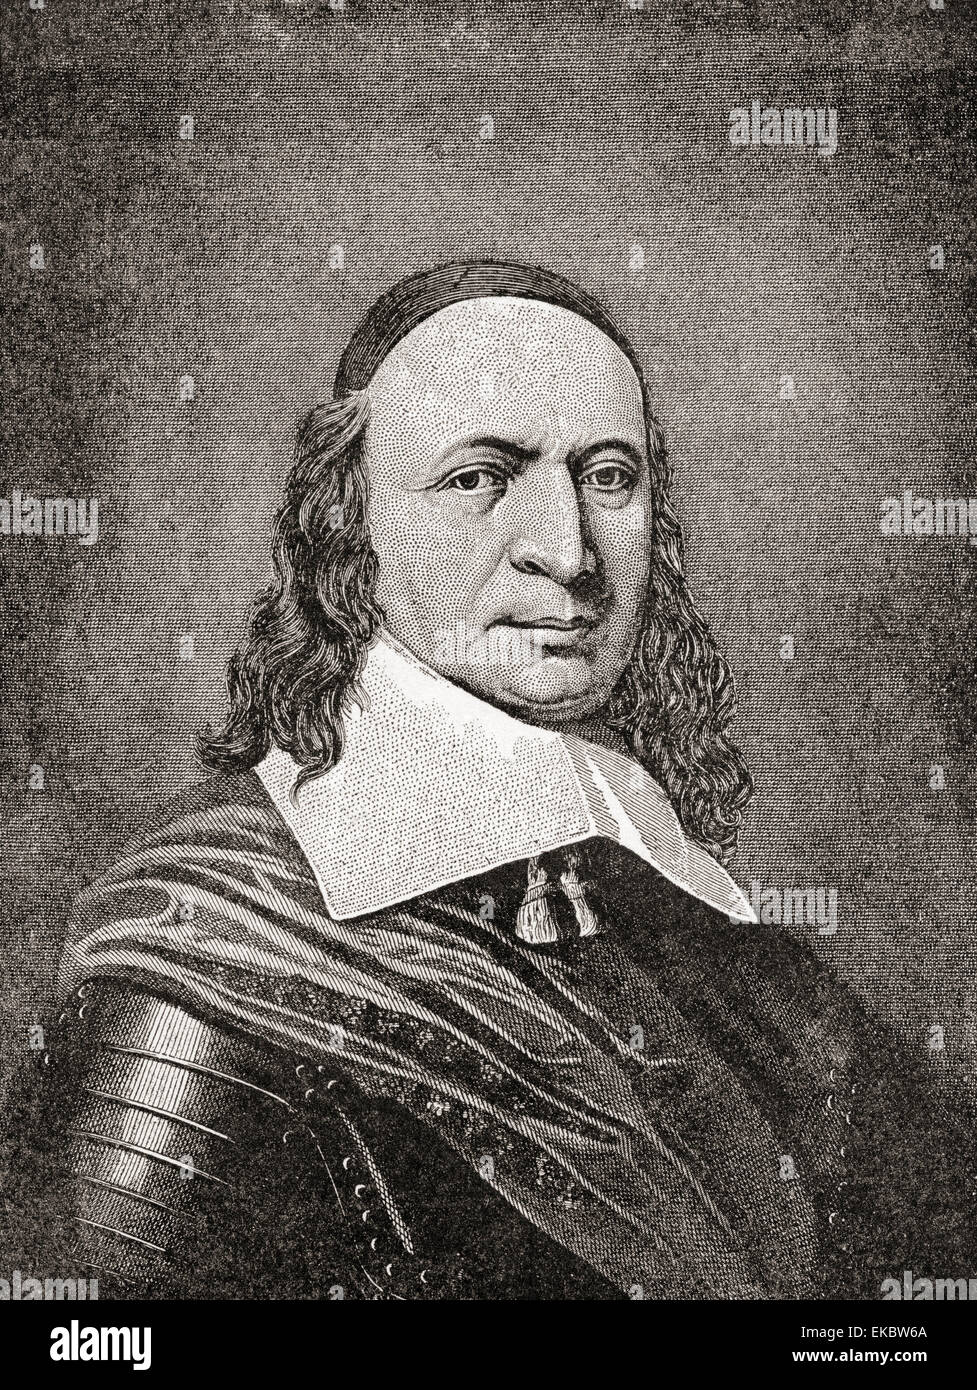 Peter Stuyvesant, c. 1612 – 1672, auch bekannt als Petrus.  Letzte niederländische Generaldirektor der Kolonie Nieuw Nederland von 1647 bis es im Jahre 1664, vorläufig an die Engländer abgetreten wurde nach dem war es umbenannt in New York. Stockfoto